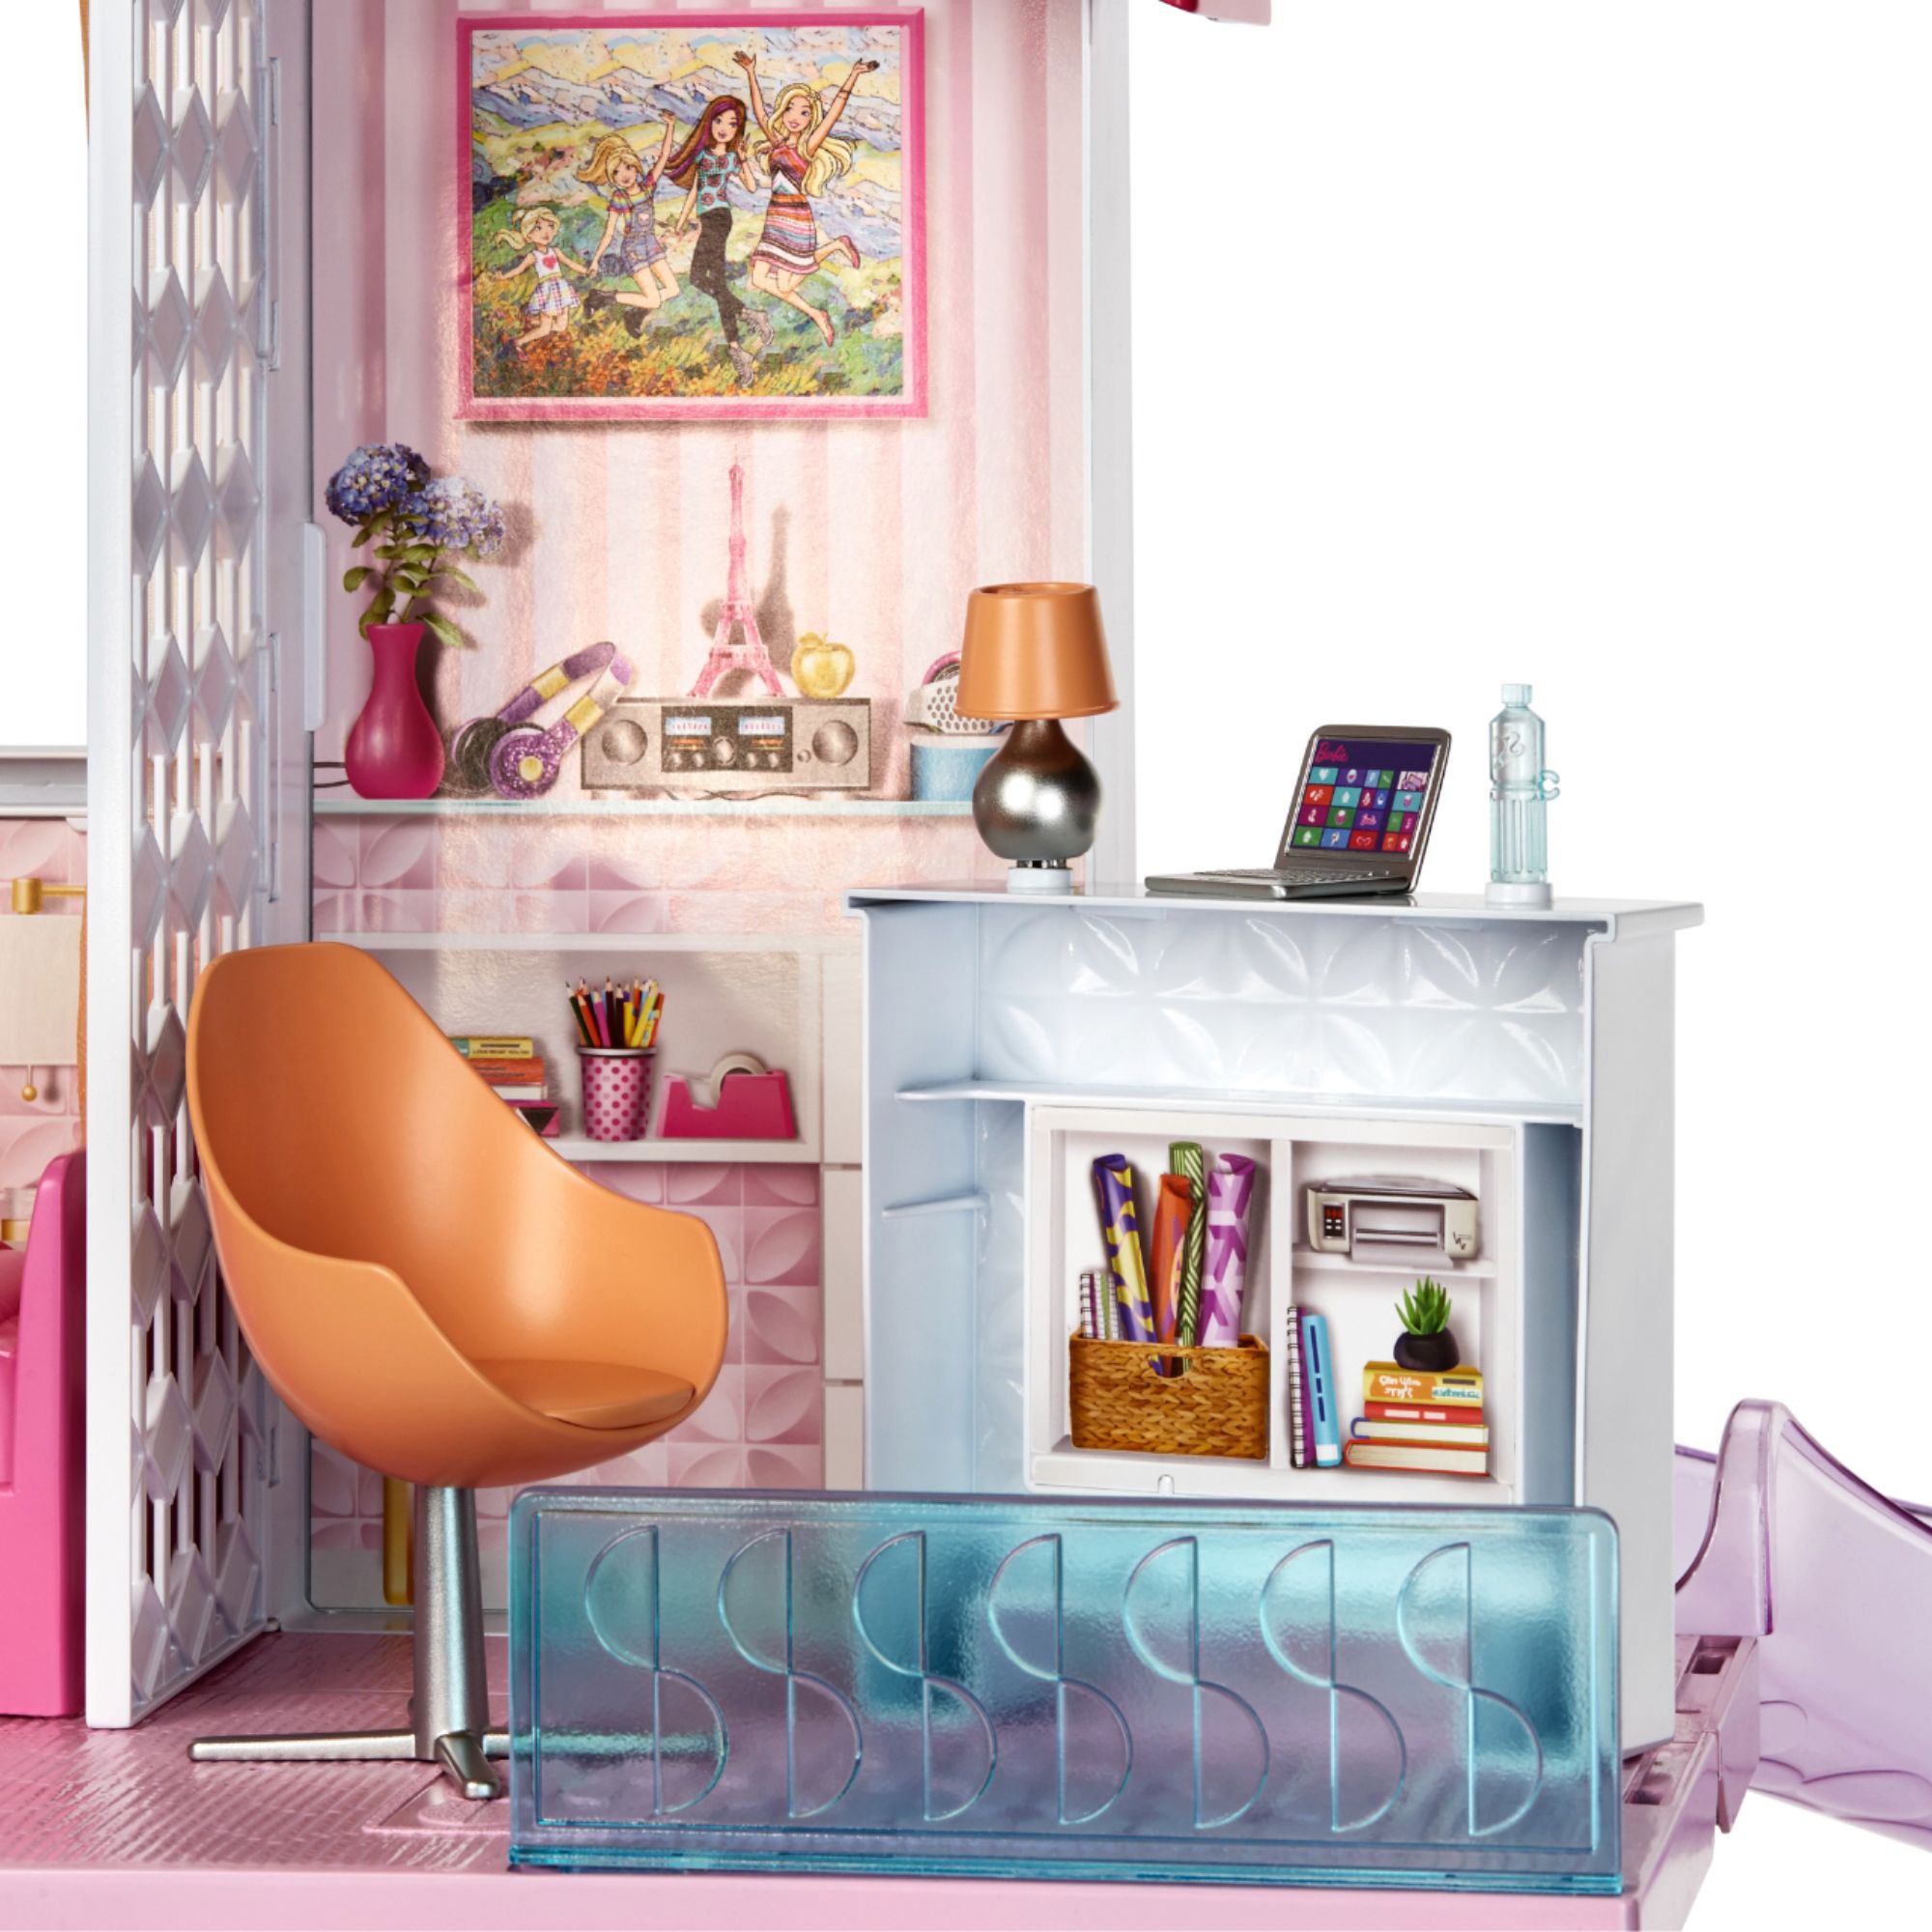 best buy barbie dream house